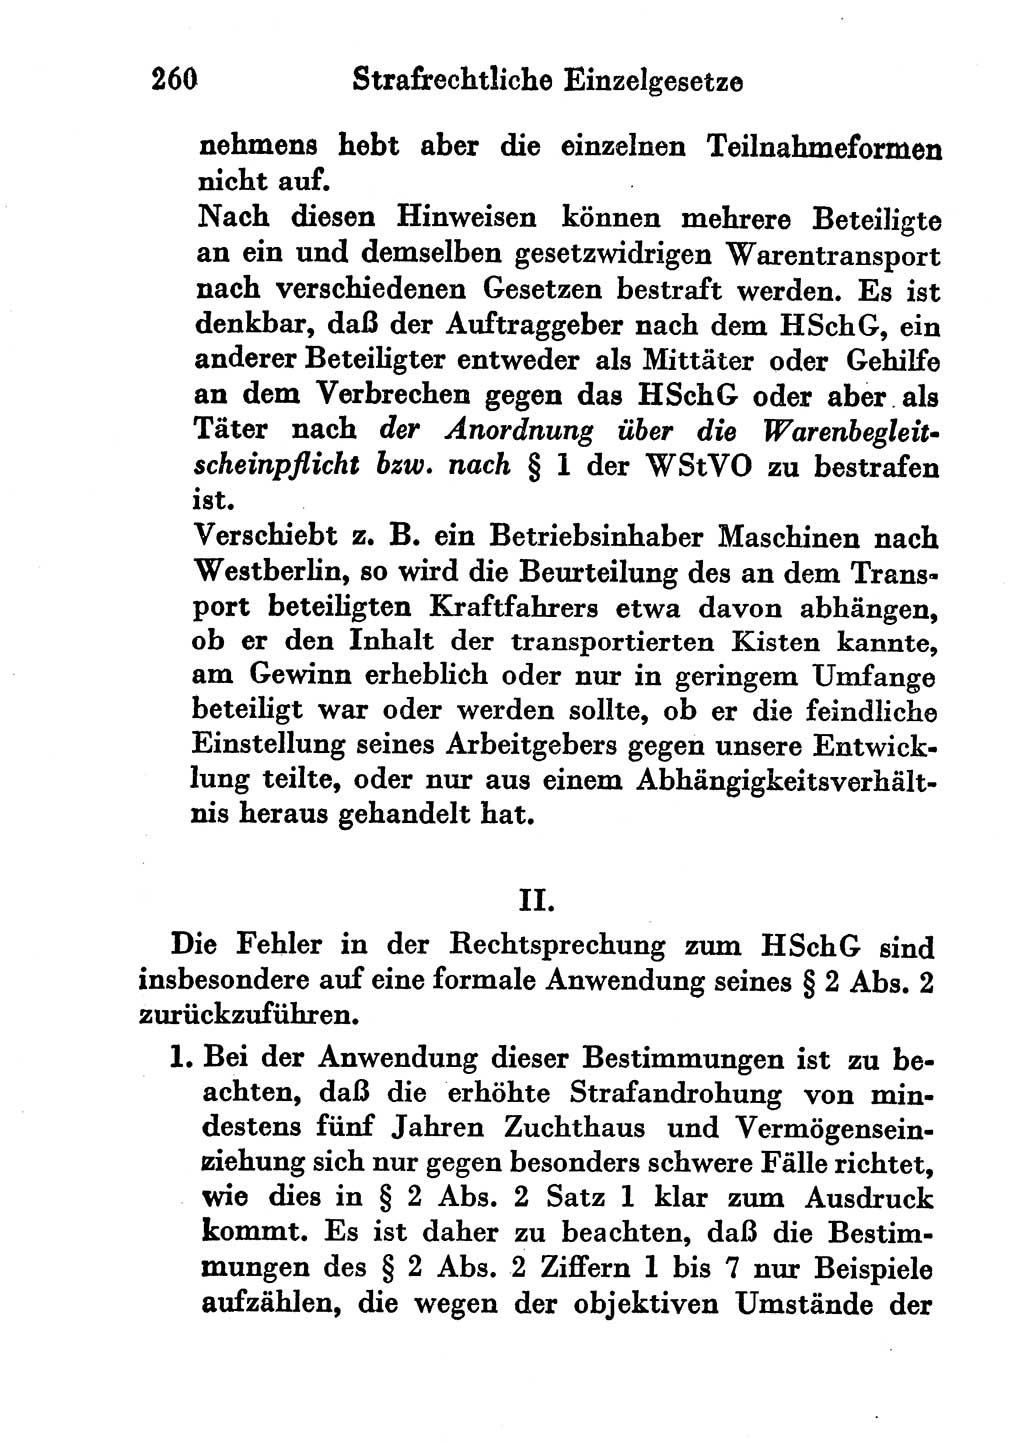 Strafgesetzbuch (StGB) und andere Strafgesetze [Deutsche Demokratische Republik (DDR)] 1956, Seite 260 (StGB Strafges. DDR 1956, S. 260)